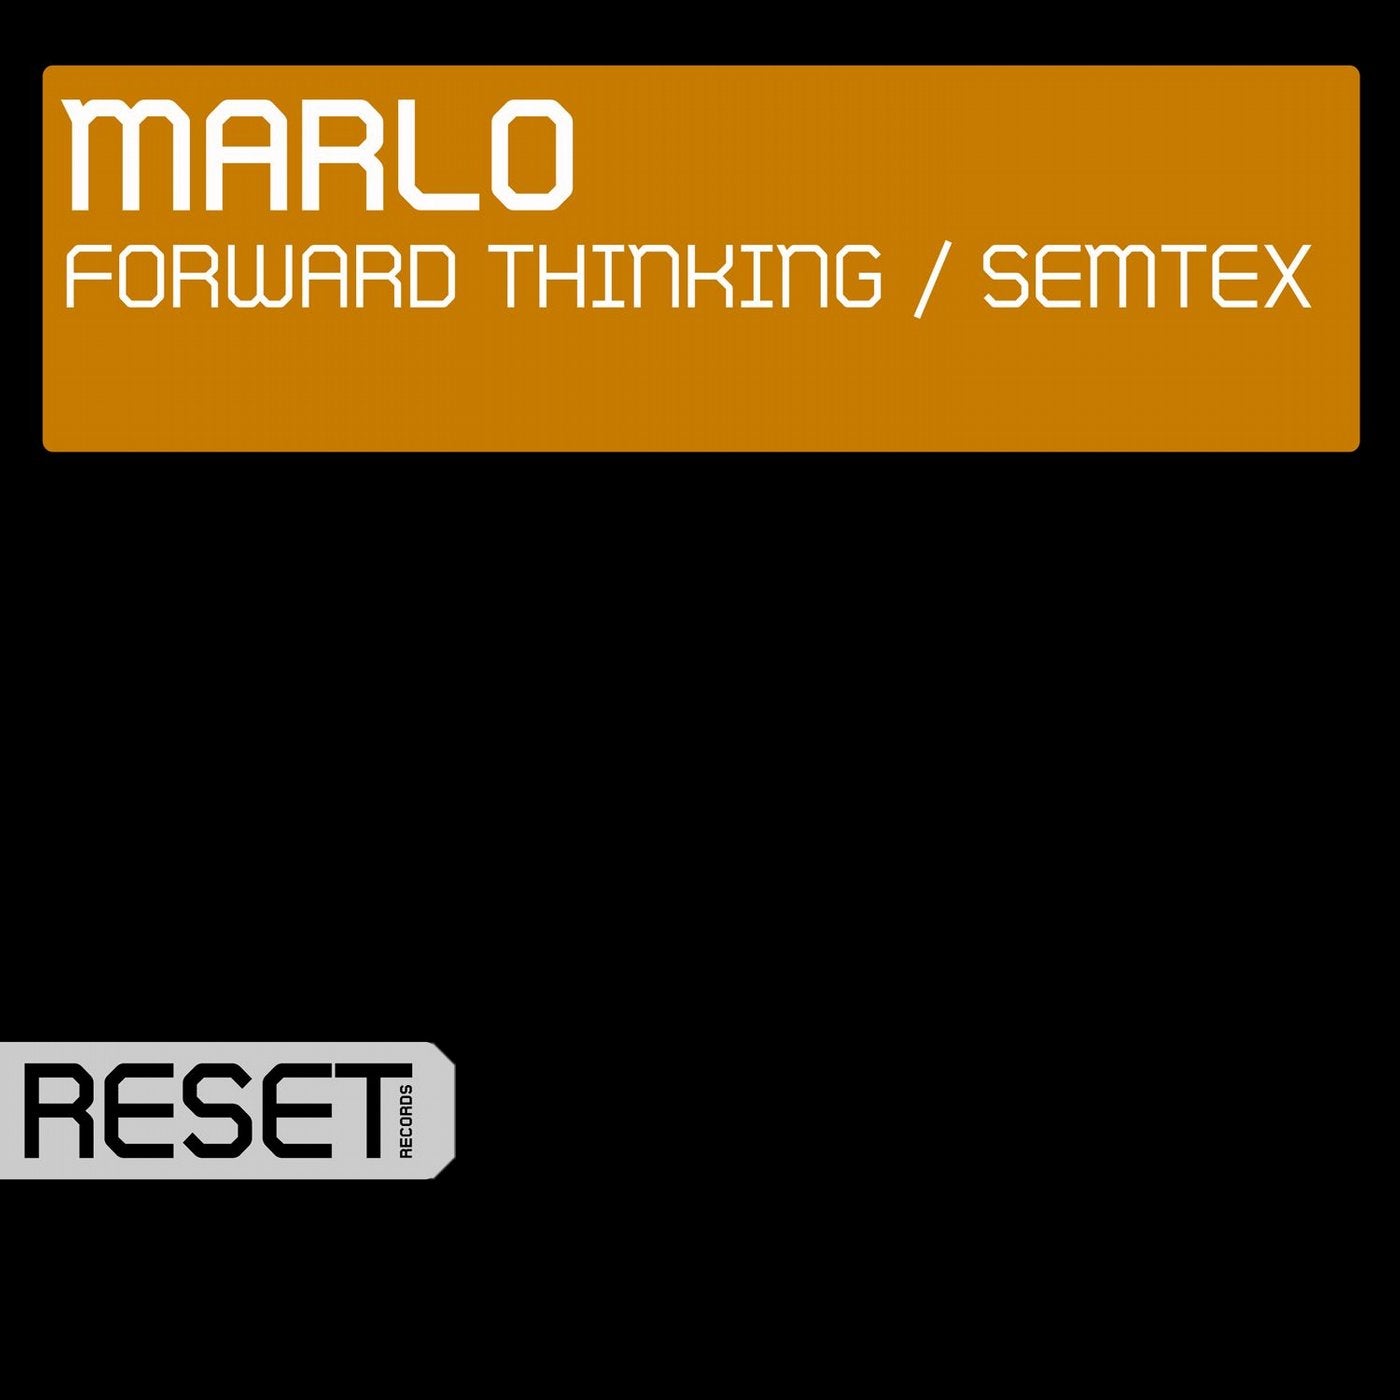 Forward Thinking / Semtex